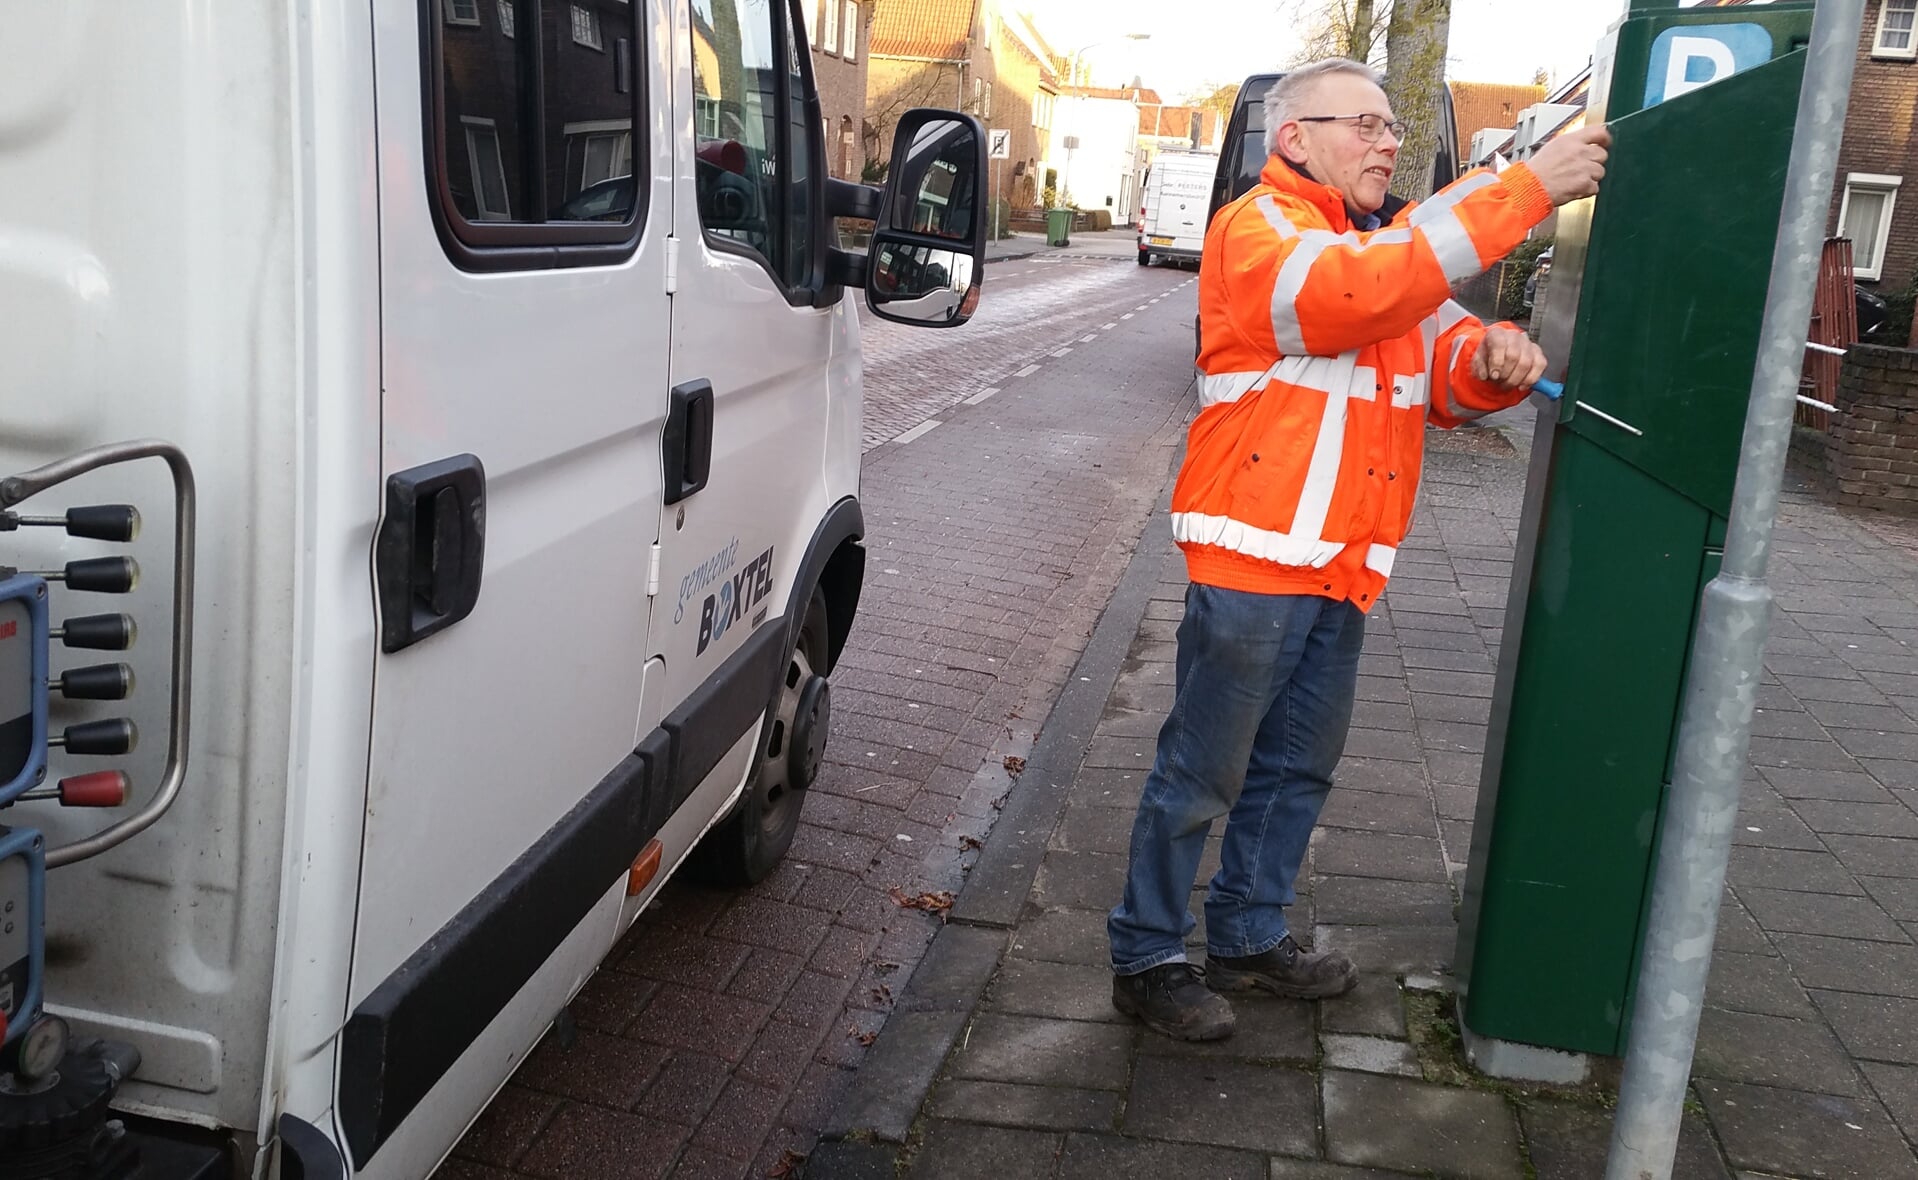 Alle parkeermeters in Boxtel zijn vrijdagochtend afgesloten. Tijdens carnaval hoeft in Eendengat geen parkeergeld betaald te worden. (Foto: Marc Cleutjens).